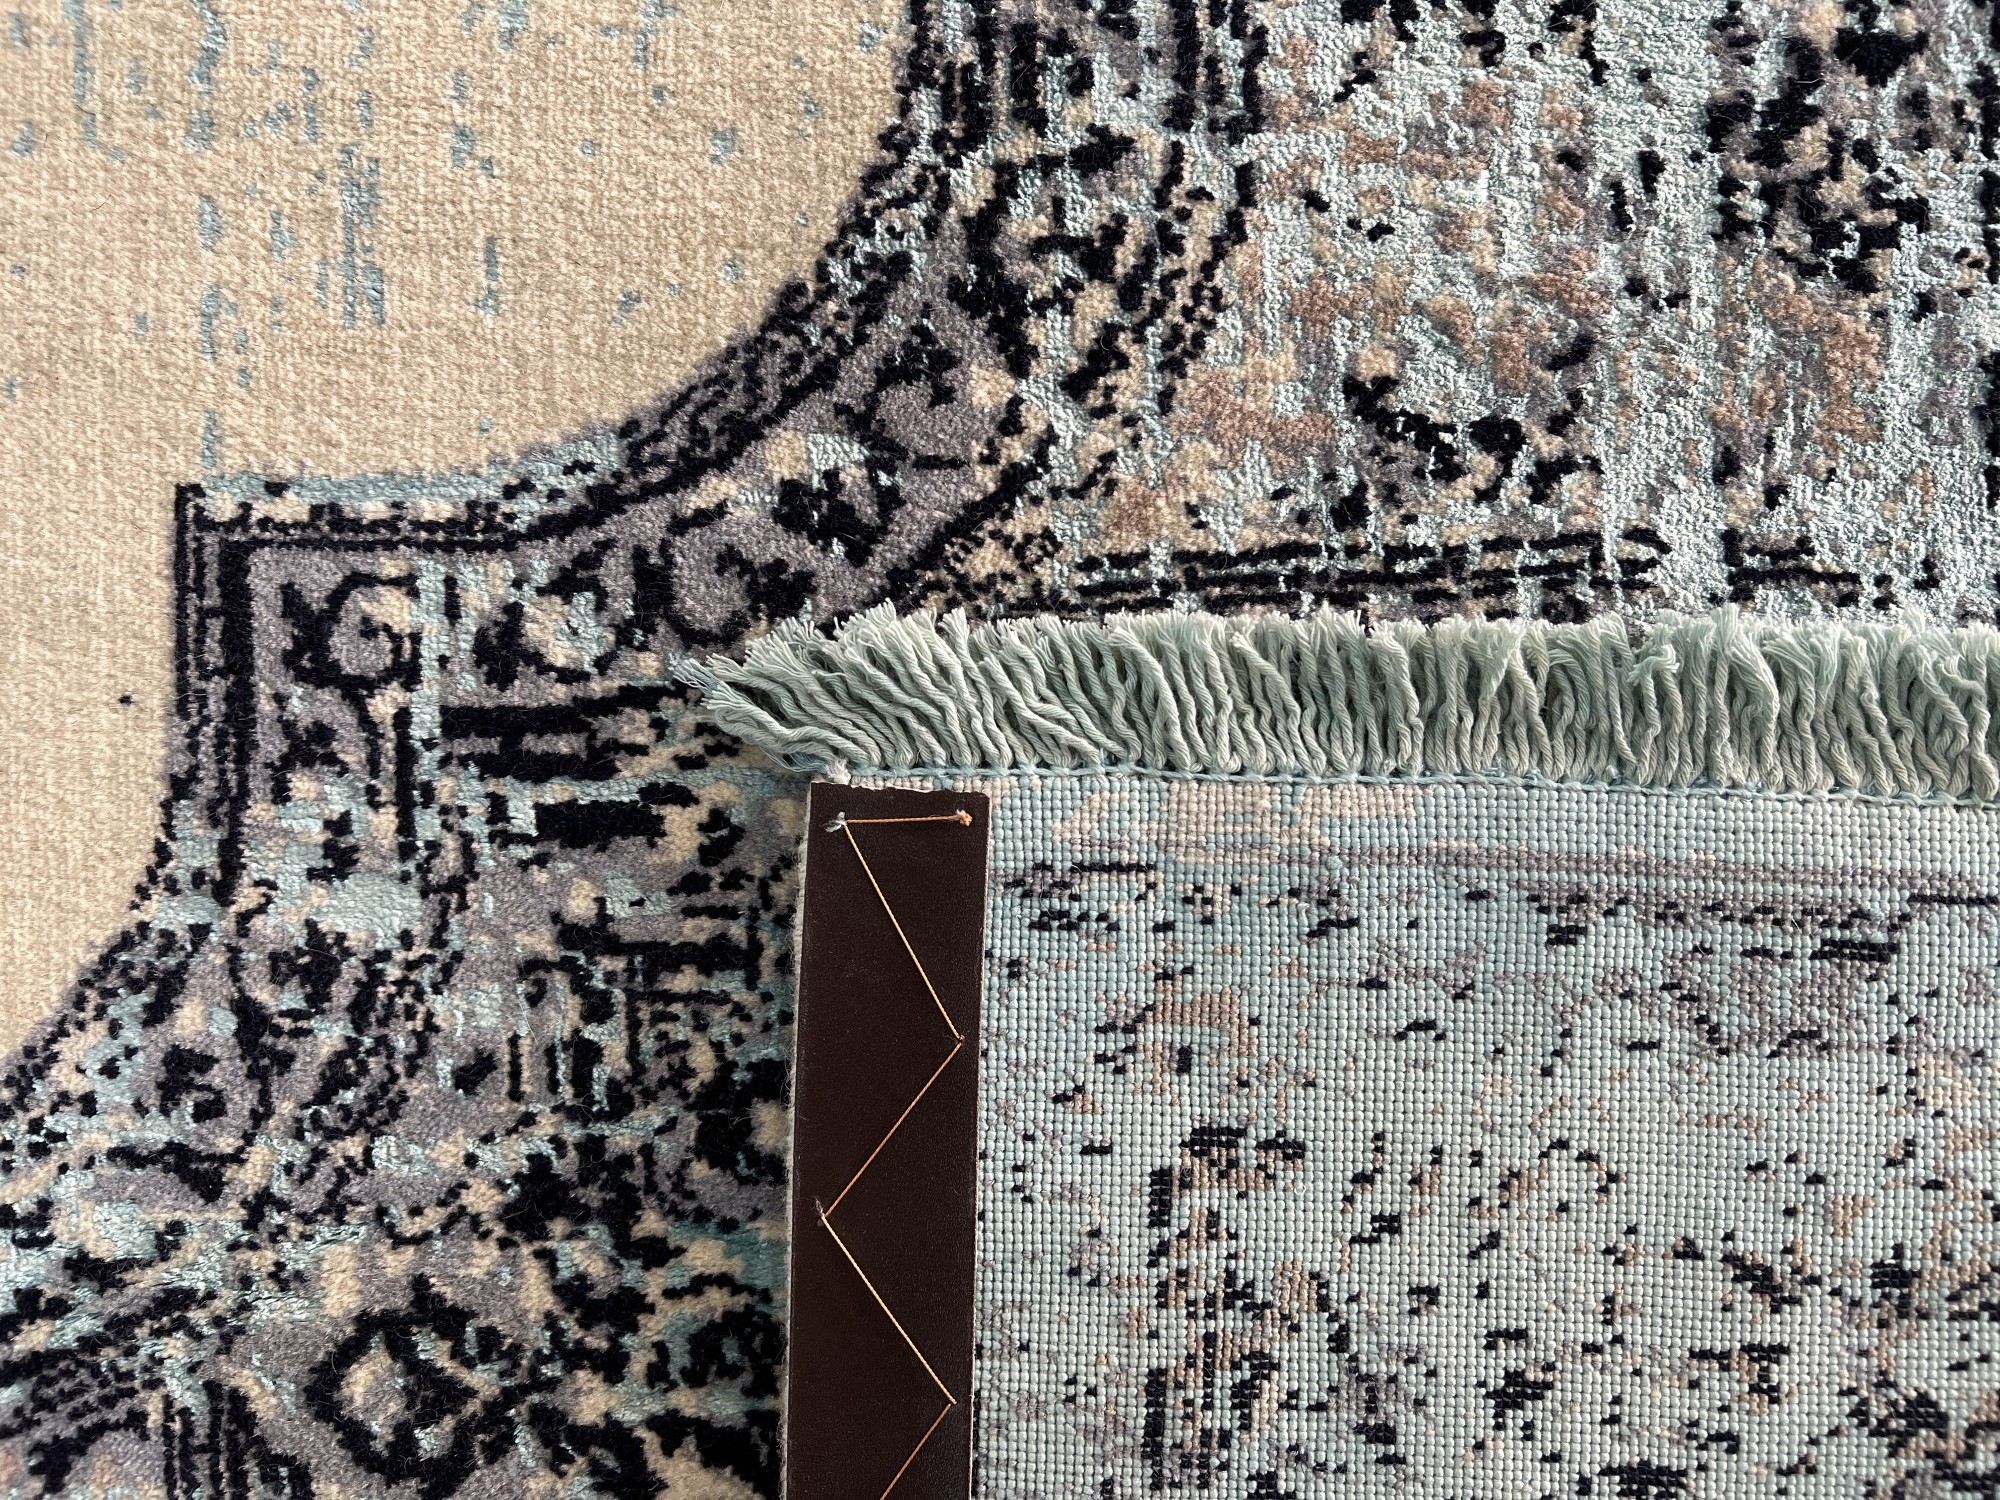 فرش پشمی ماشینی طبیعی و ارگانیک کد 0103 - زمینه کرم - حاشیه آبی کم رنگ